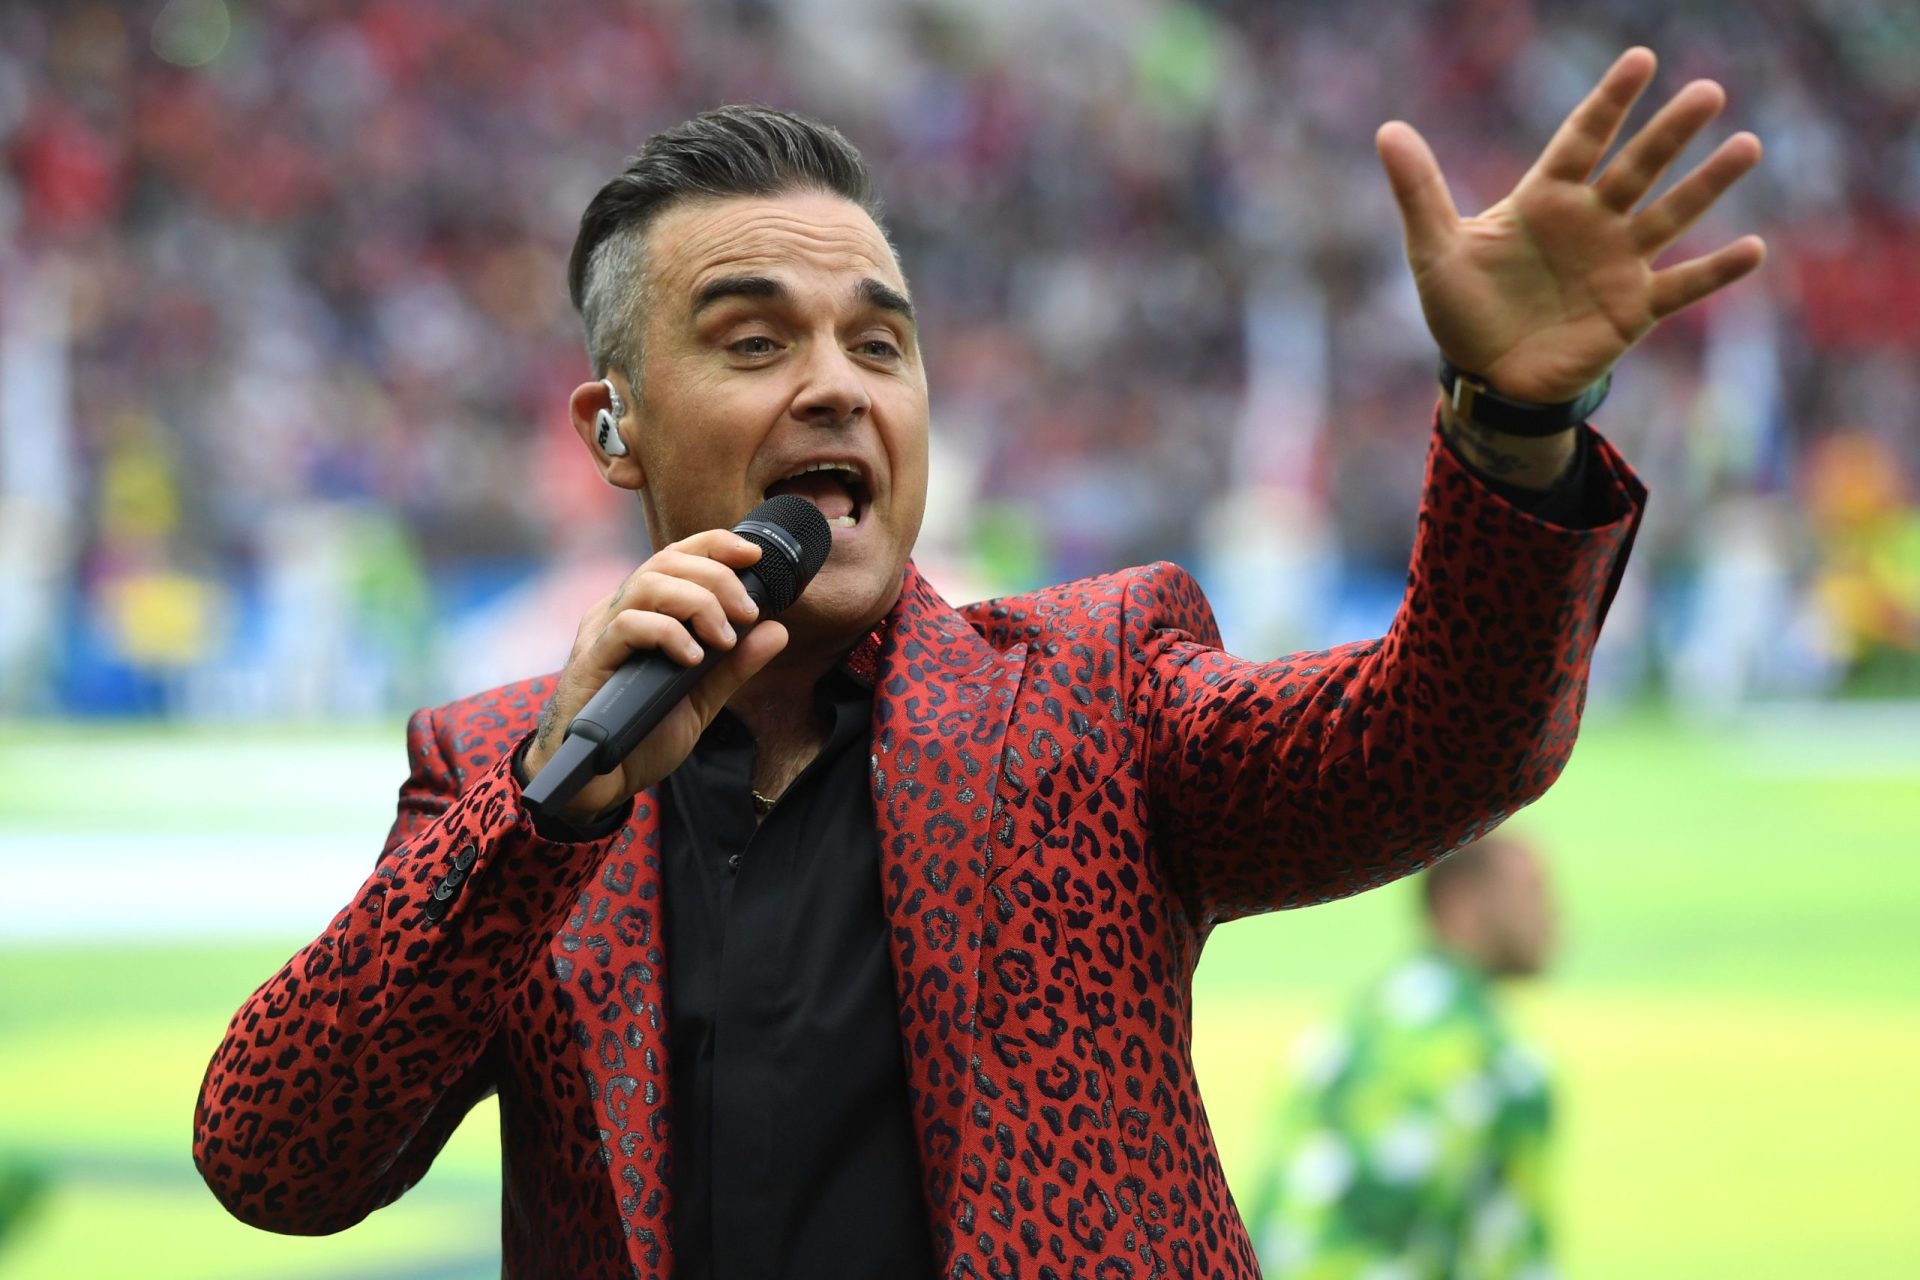 O momento insólito de Robbie Williams na abertura do Mundial 2018 | VÍDEO